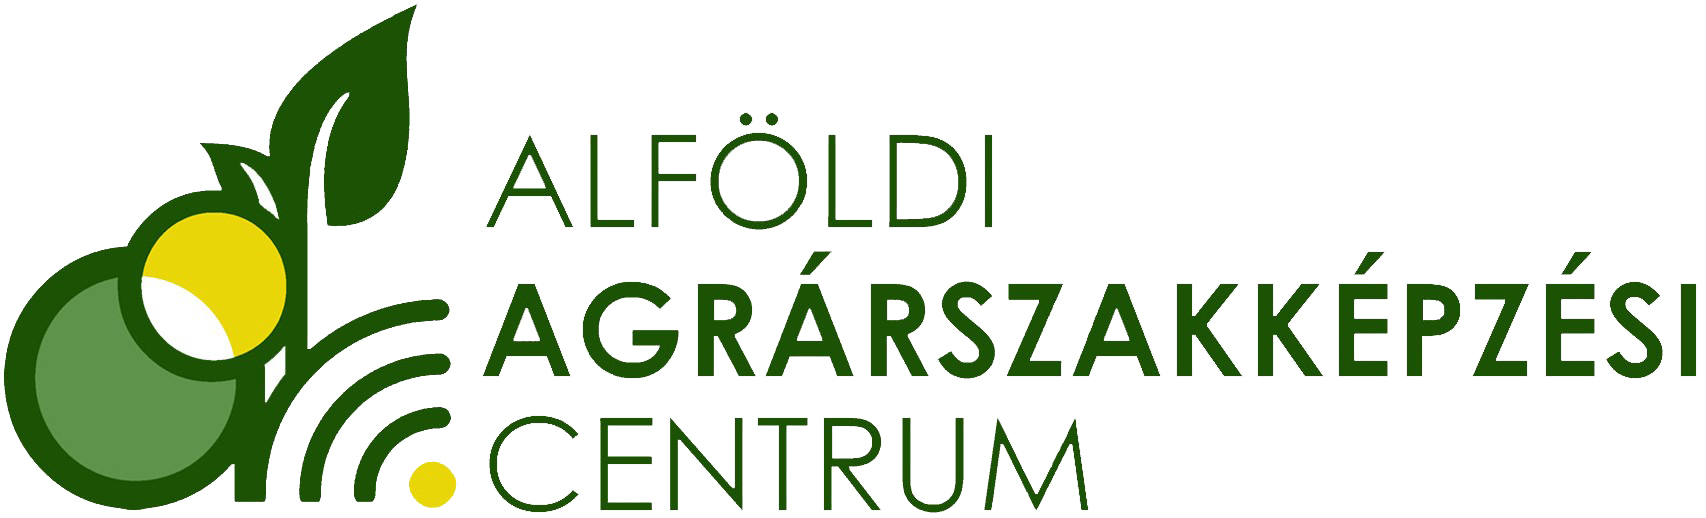 Alföldi Agrárszakképzési Centrum logója